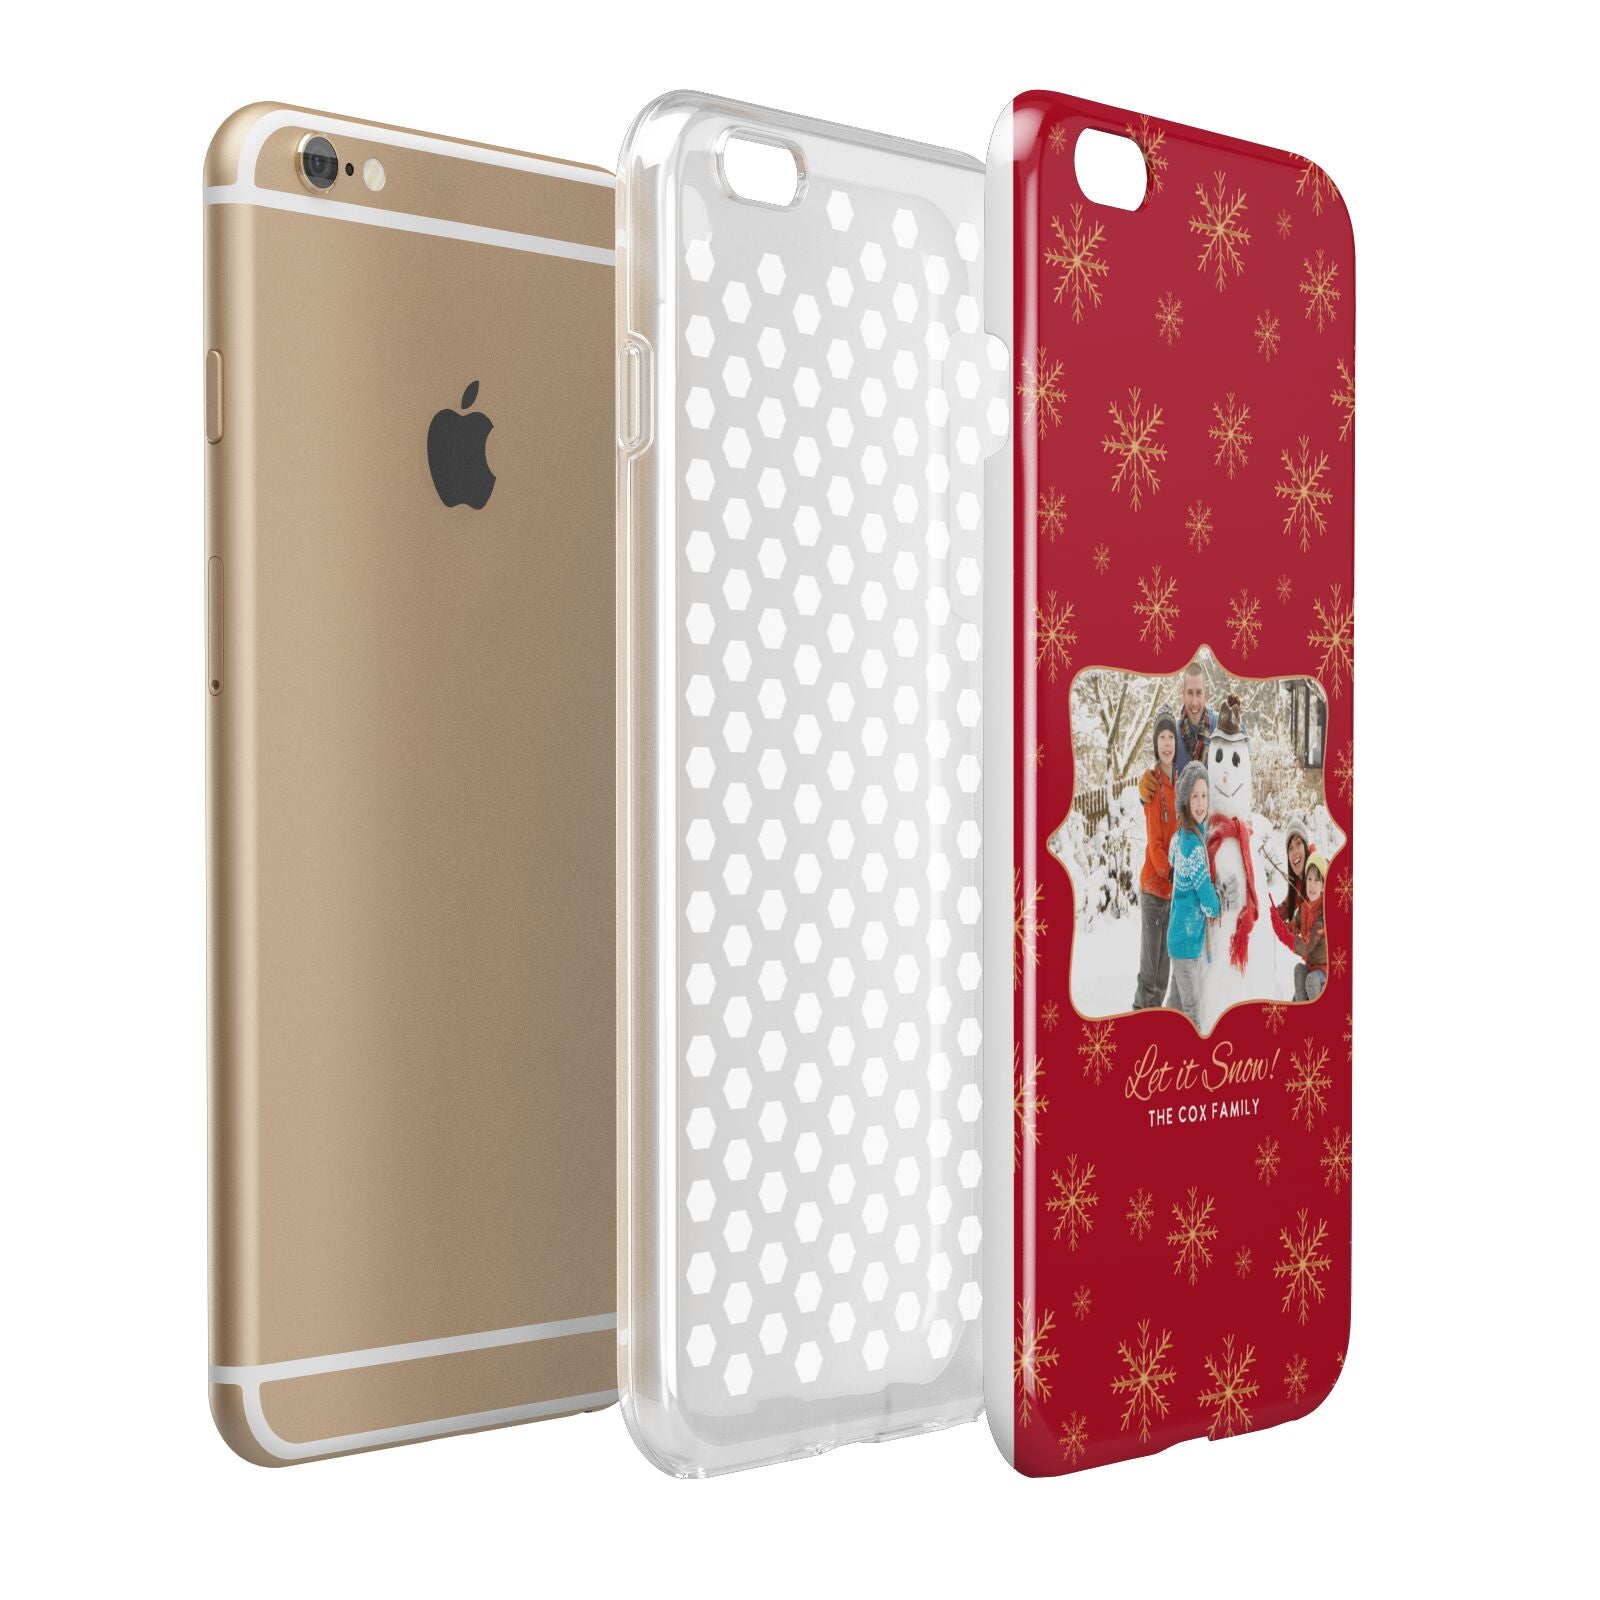 Let it Snow Christmas Photo Upload Apple iPhone 6 Plus 3D Tough Case Expand Detail Image